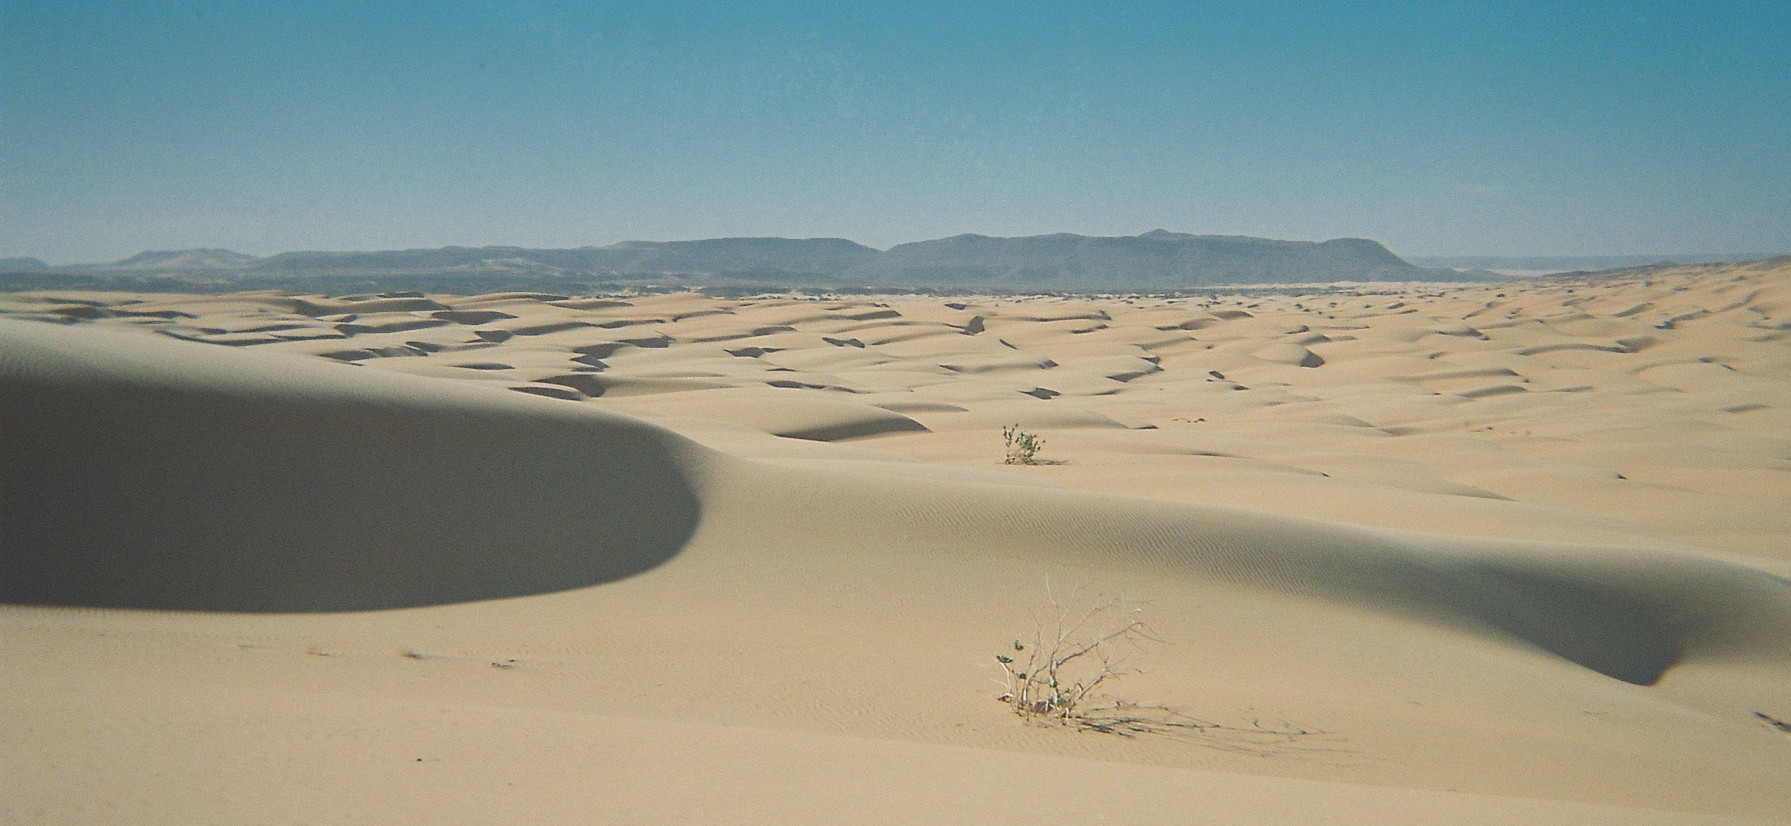 Adrar, Mauritania